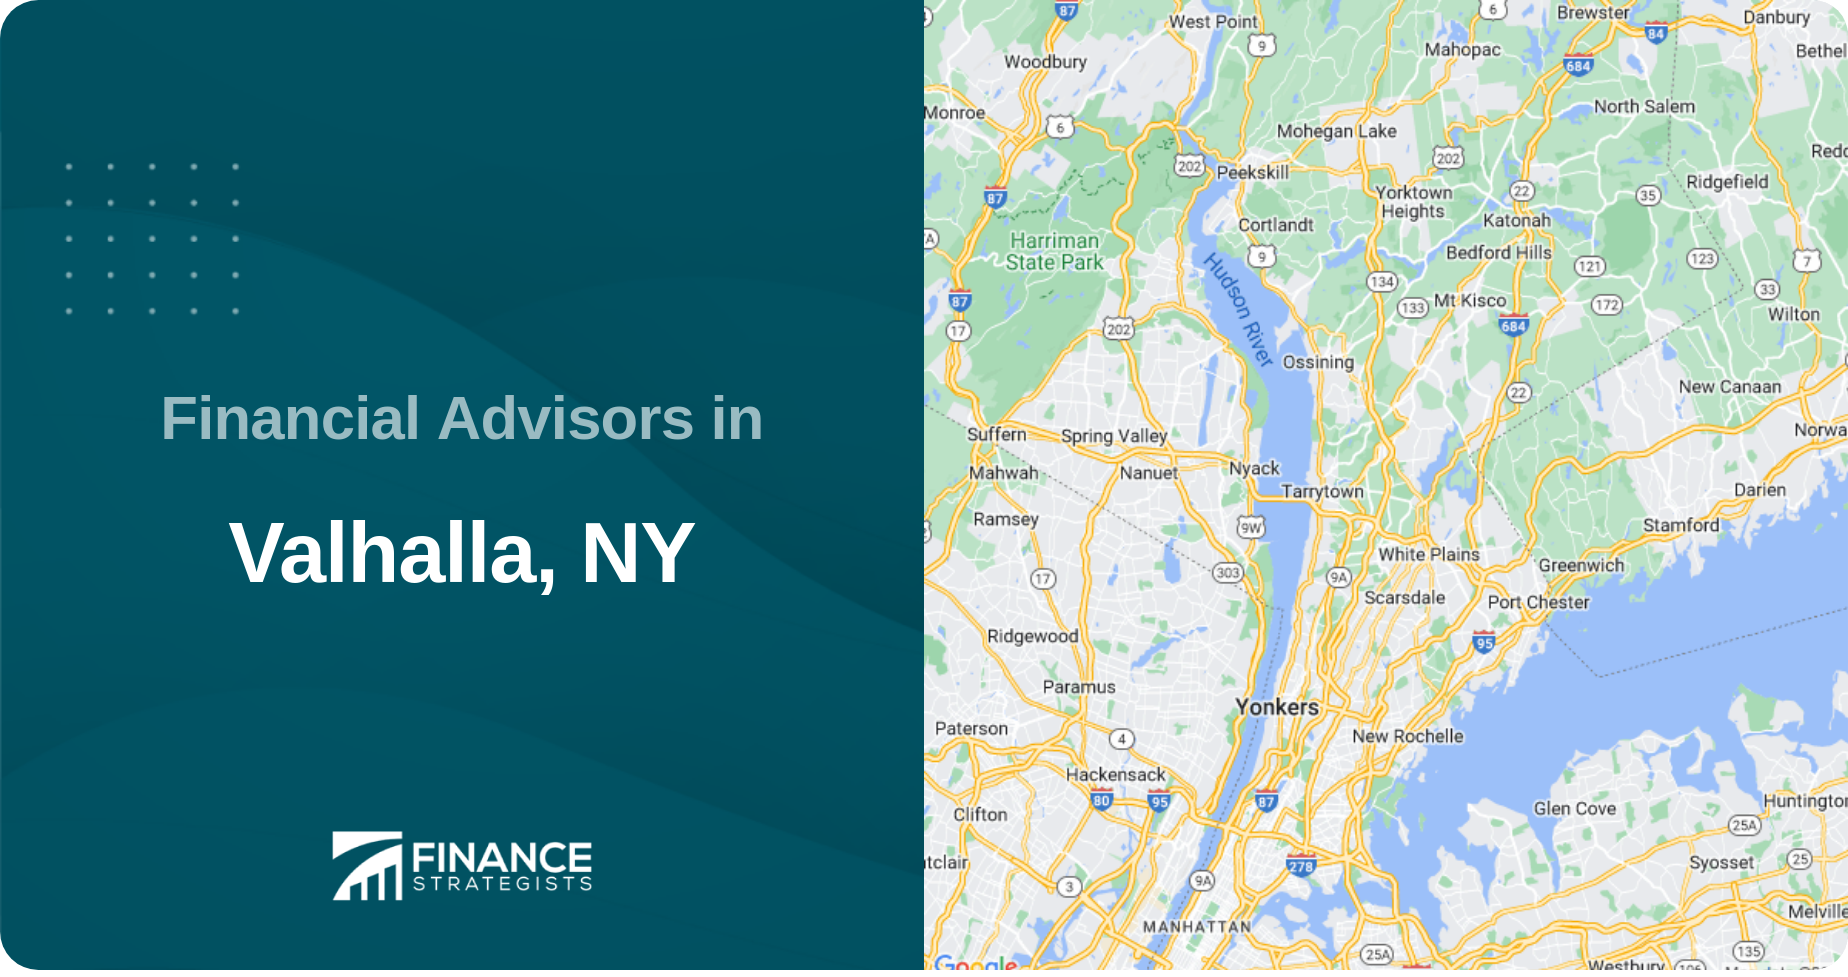 Financial Advisors in Valhalla, NY